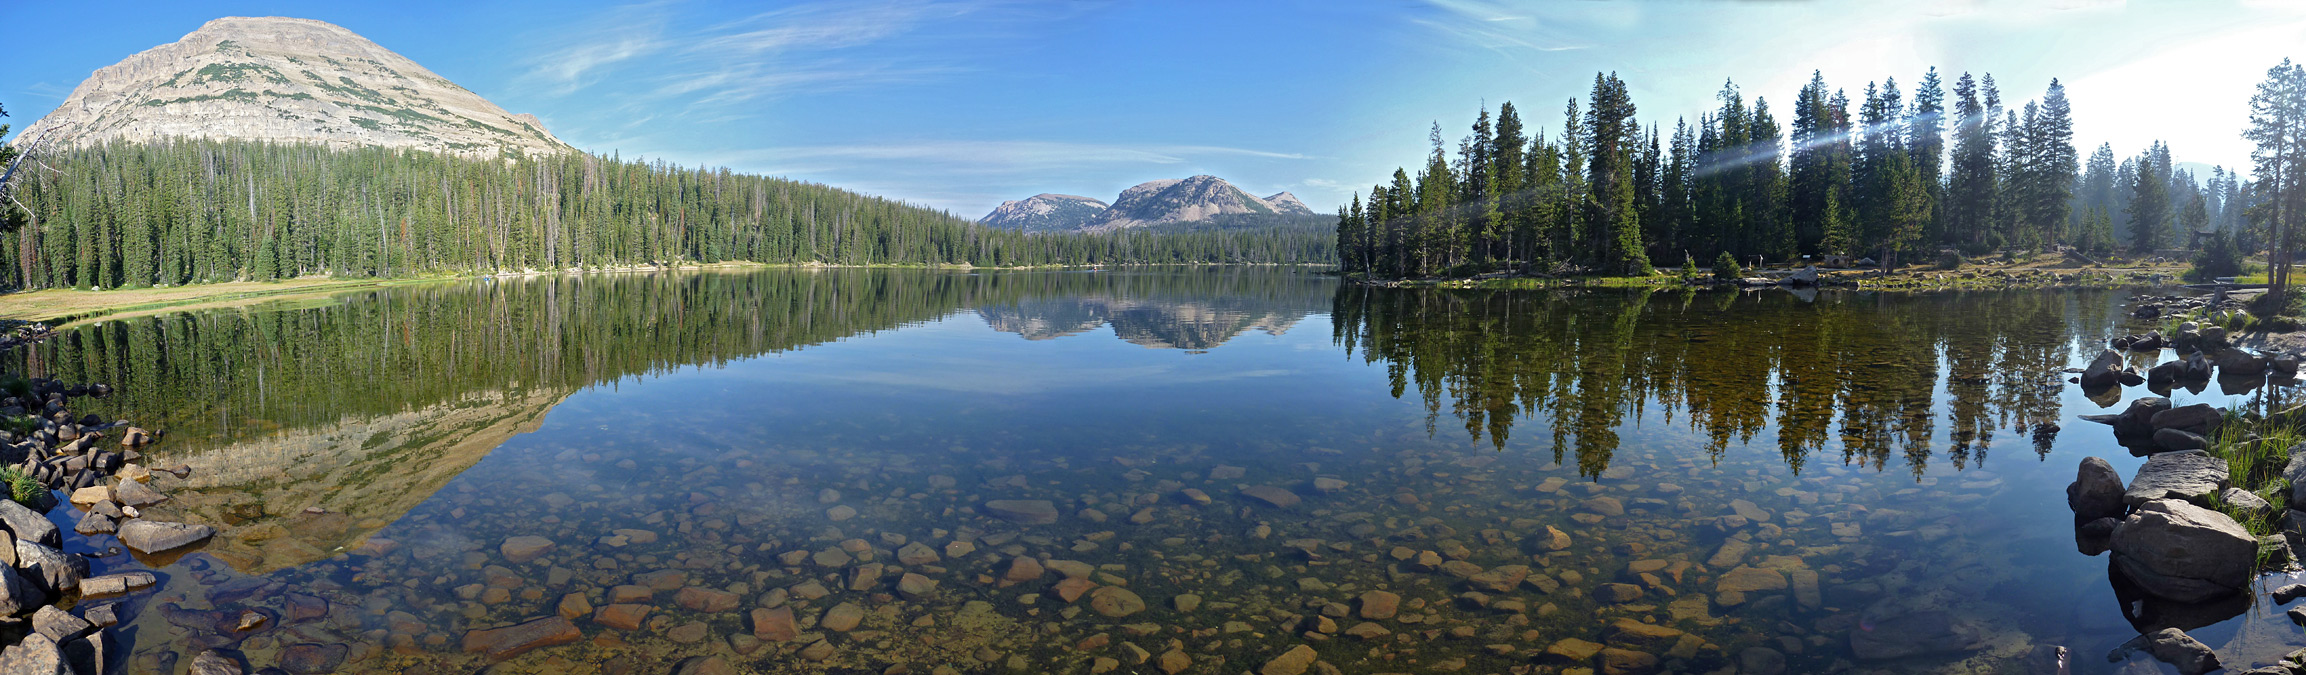 Panorama of Mirror Lake